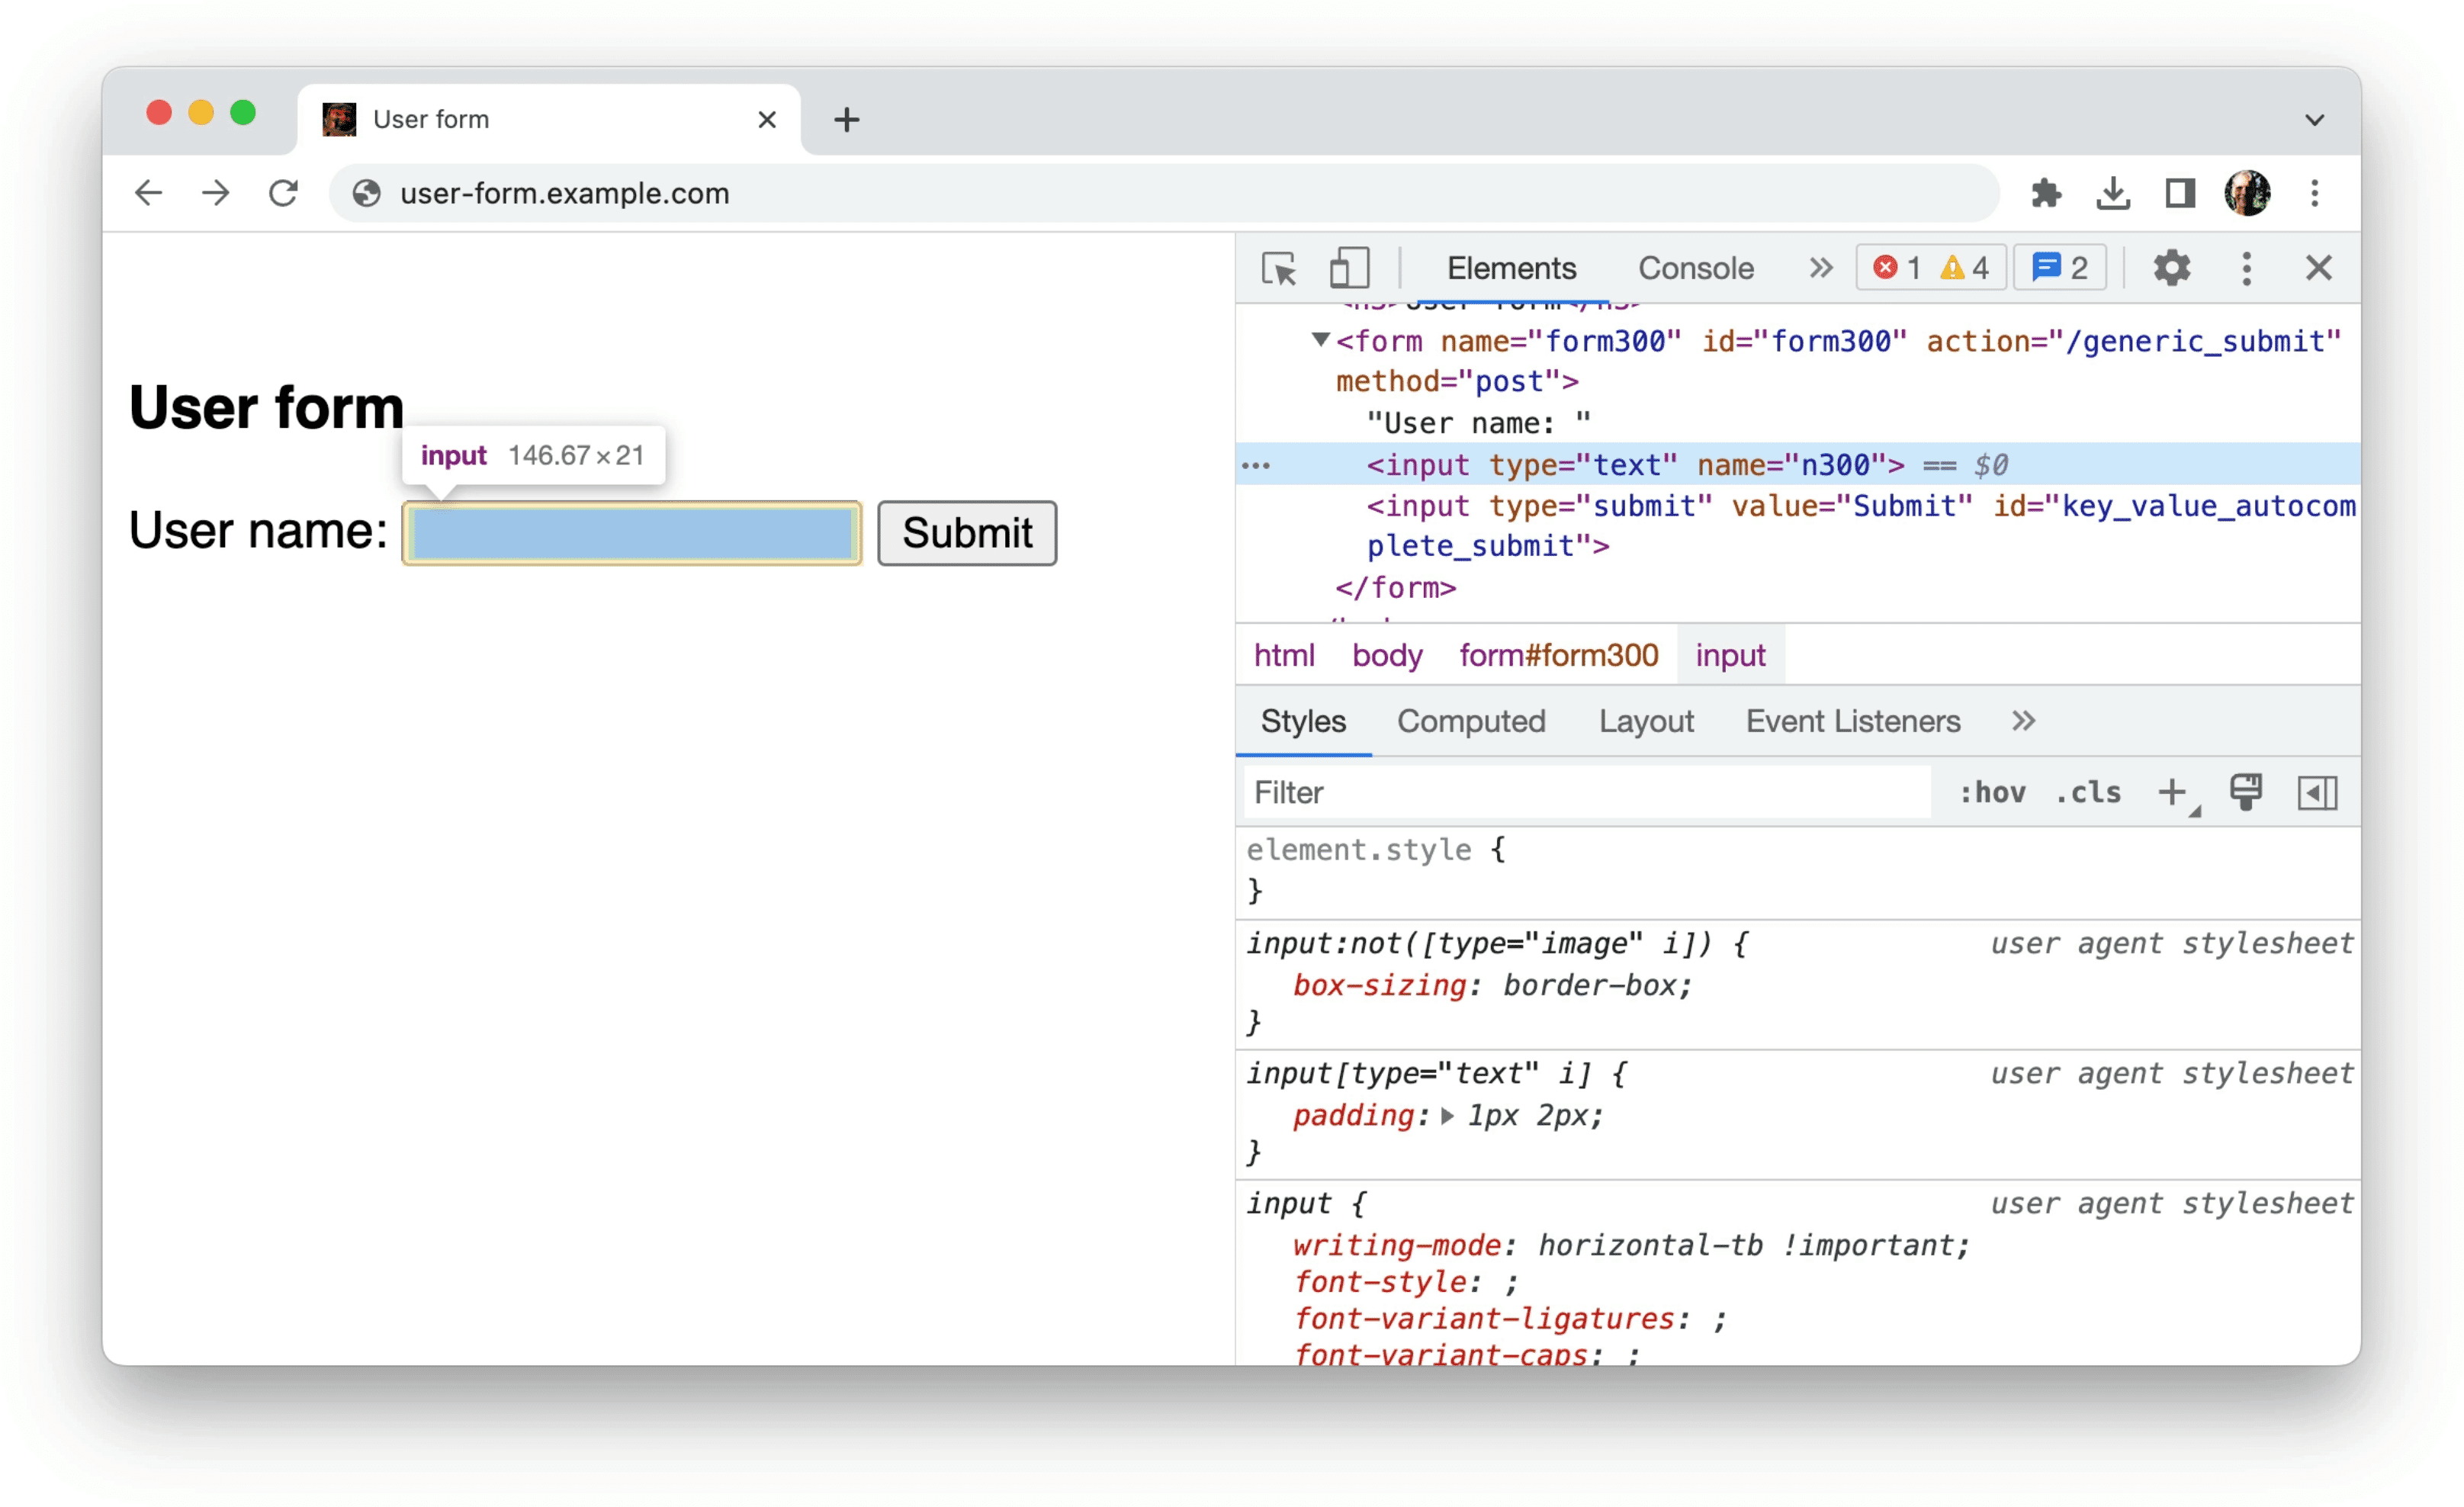 Chrome DevTools
एक फ़ॉर्म में स्ट्रक्चर्ड डेटा के बारे में जानकारी दिखाता है, जैसा कि पिछले उदाहरण में दिखाया गया है: एक ऐसा इनपुट जिसमें सिर्फ़ एट्रिब्यूट टाइप=text और name=n300 होते हैं.